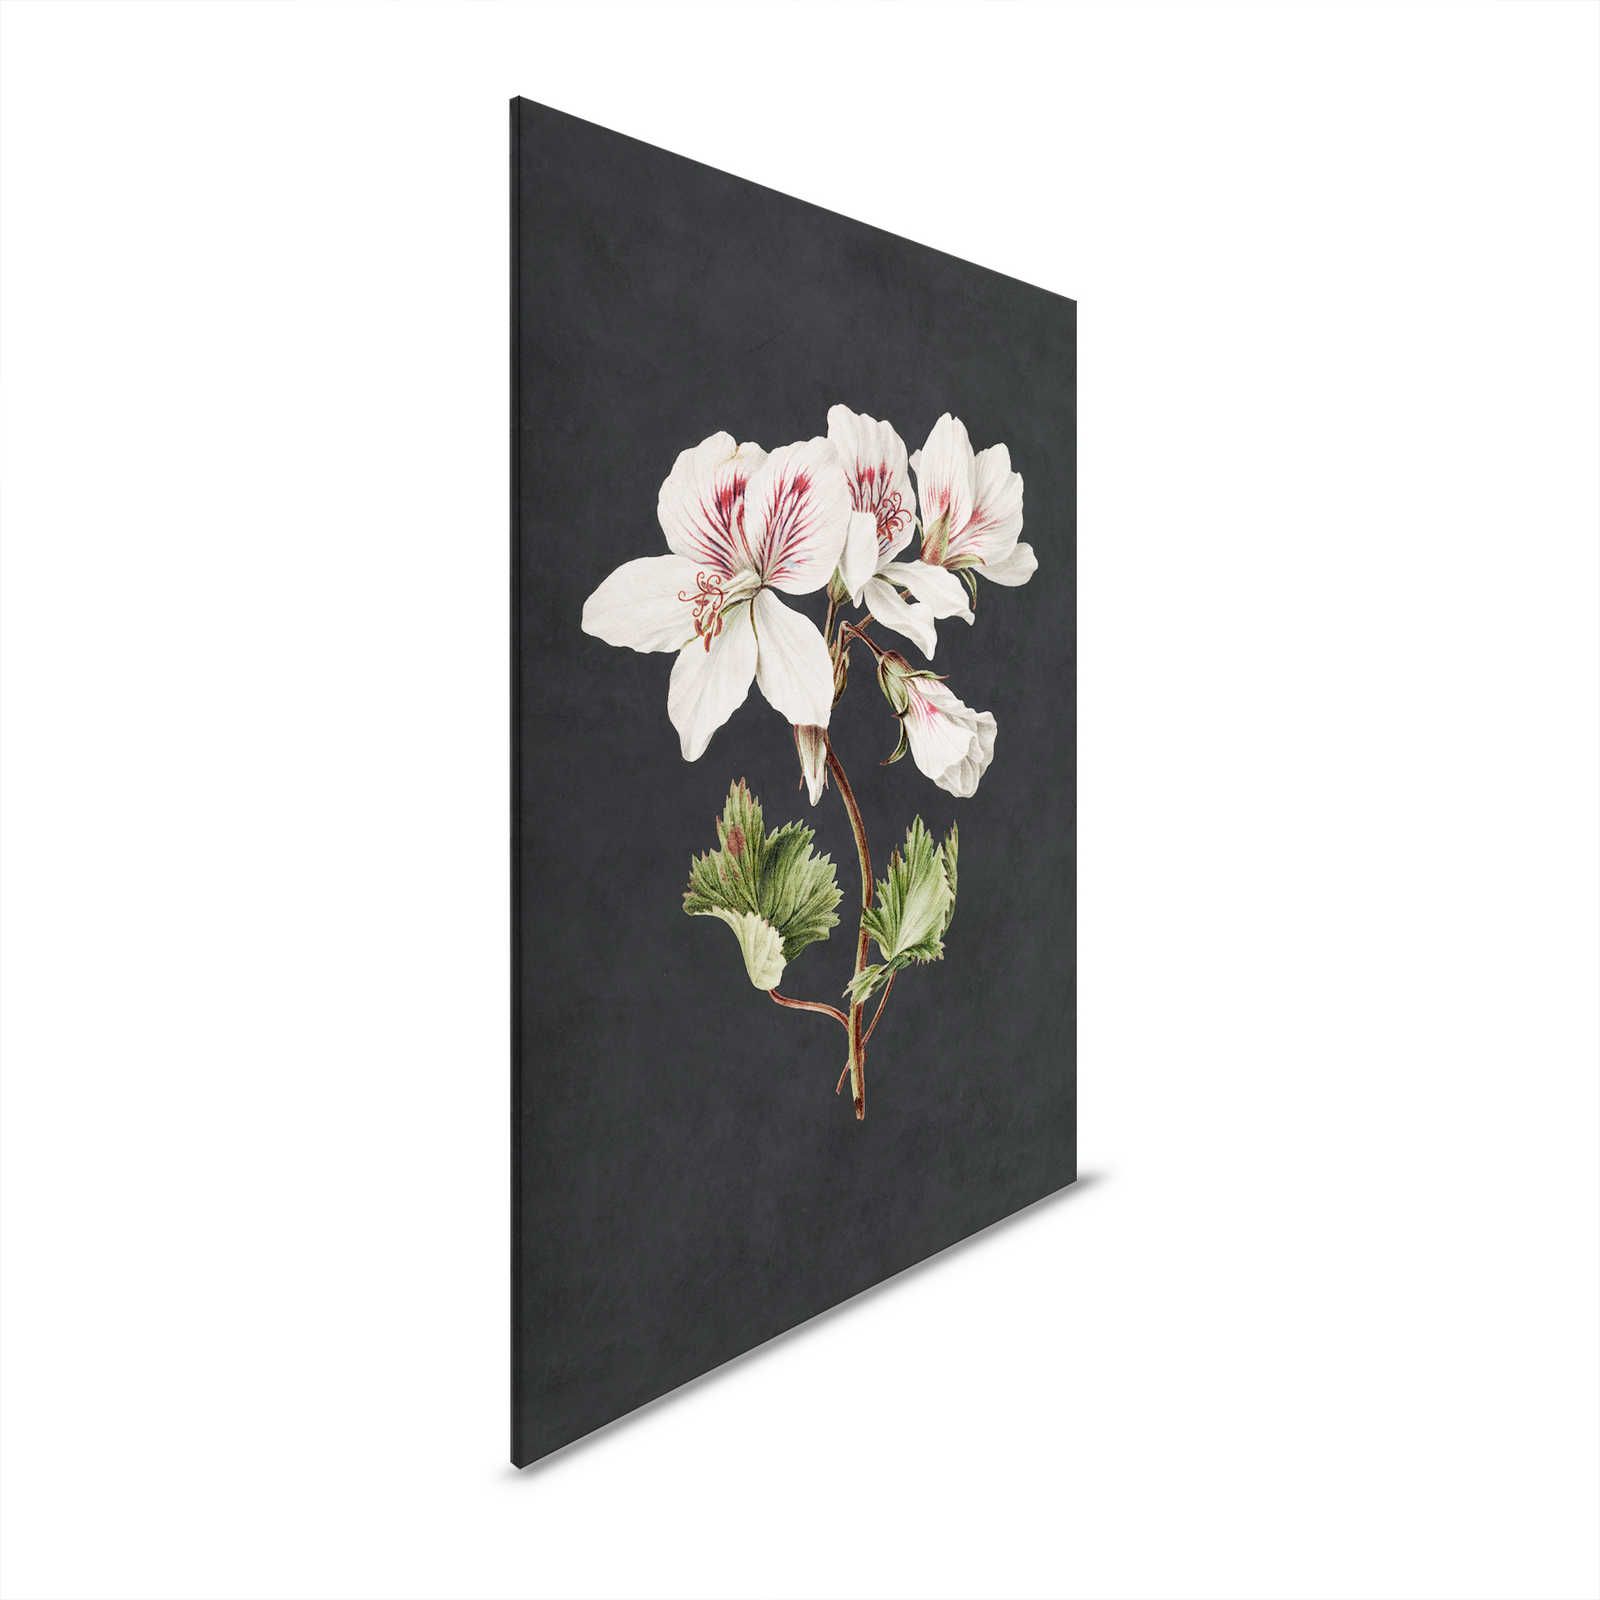 Midnight Garden 1 - Schwarzes Leinwandbild Lilie Blüte im Gemälde Stil – 0,80 m x 1,20 m
